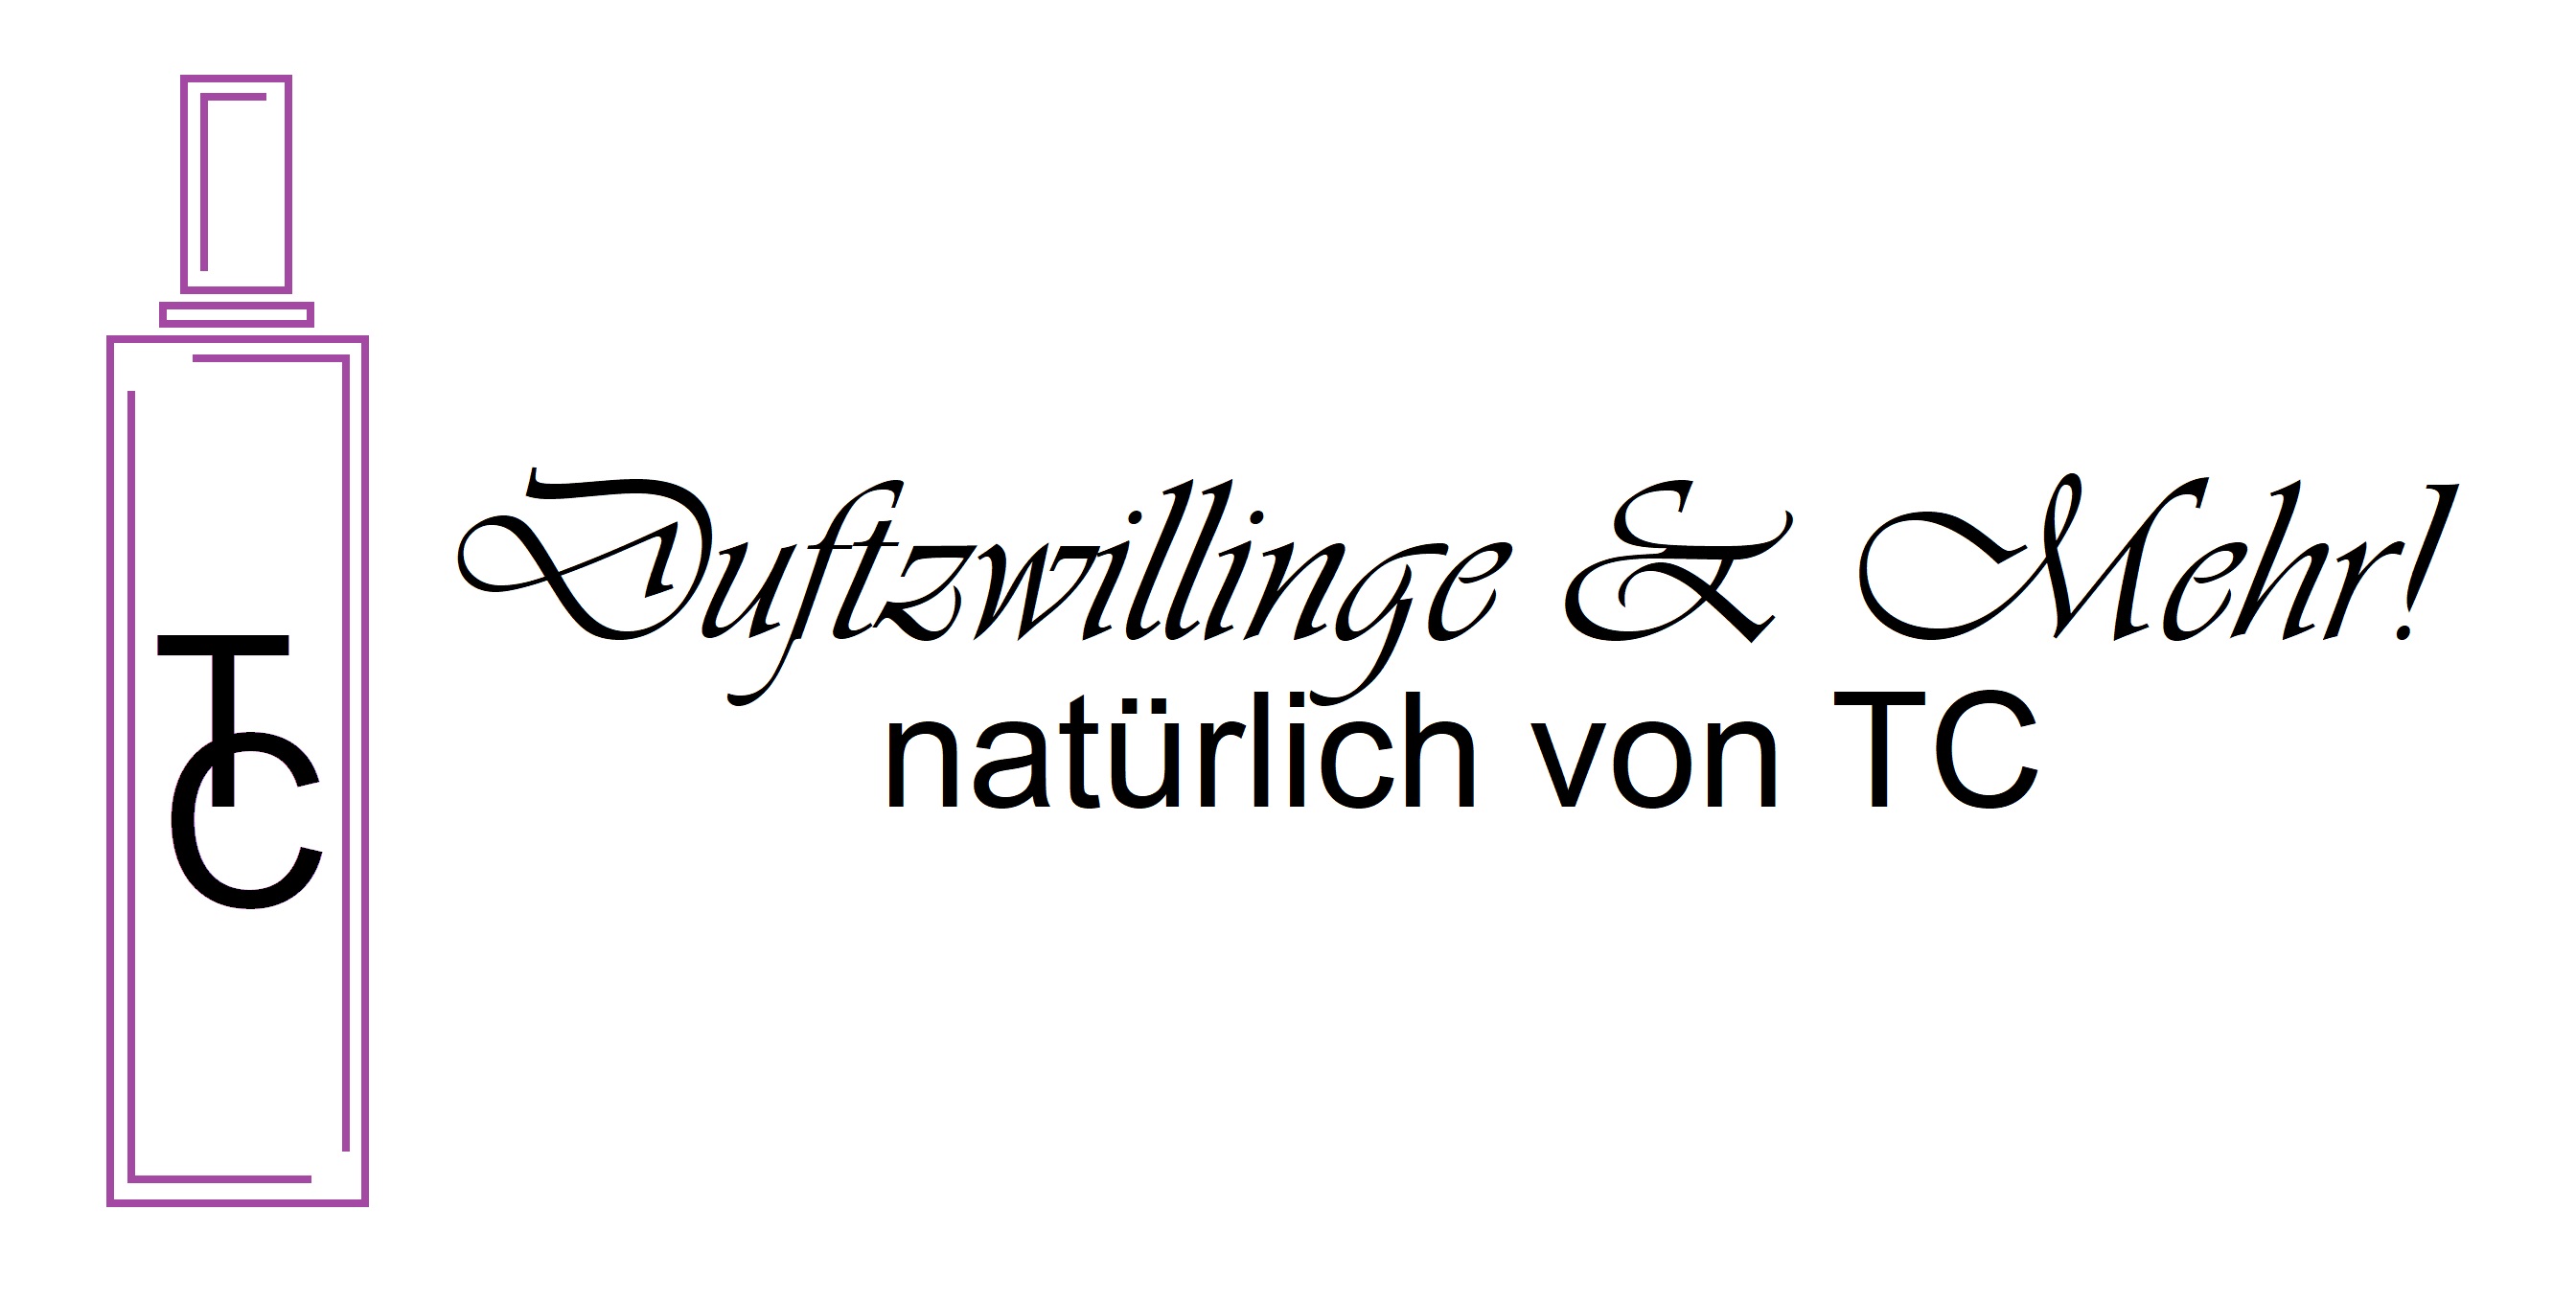 Düfte von TC-Logo